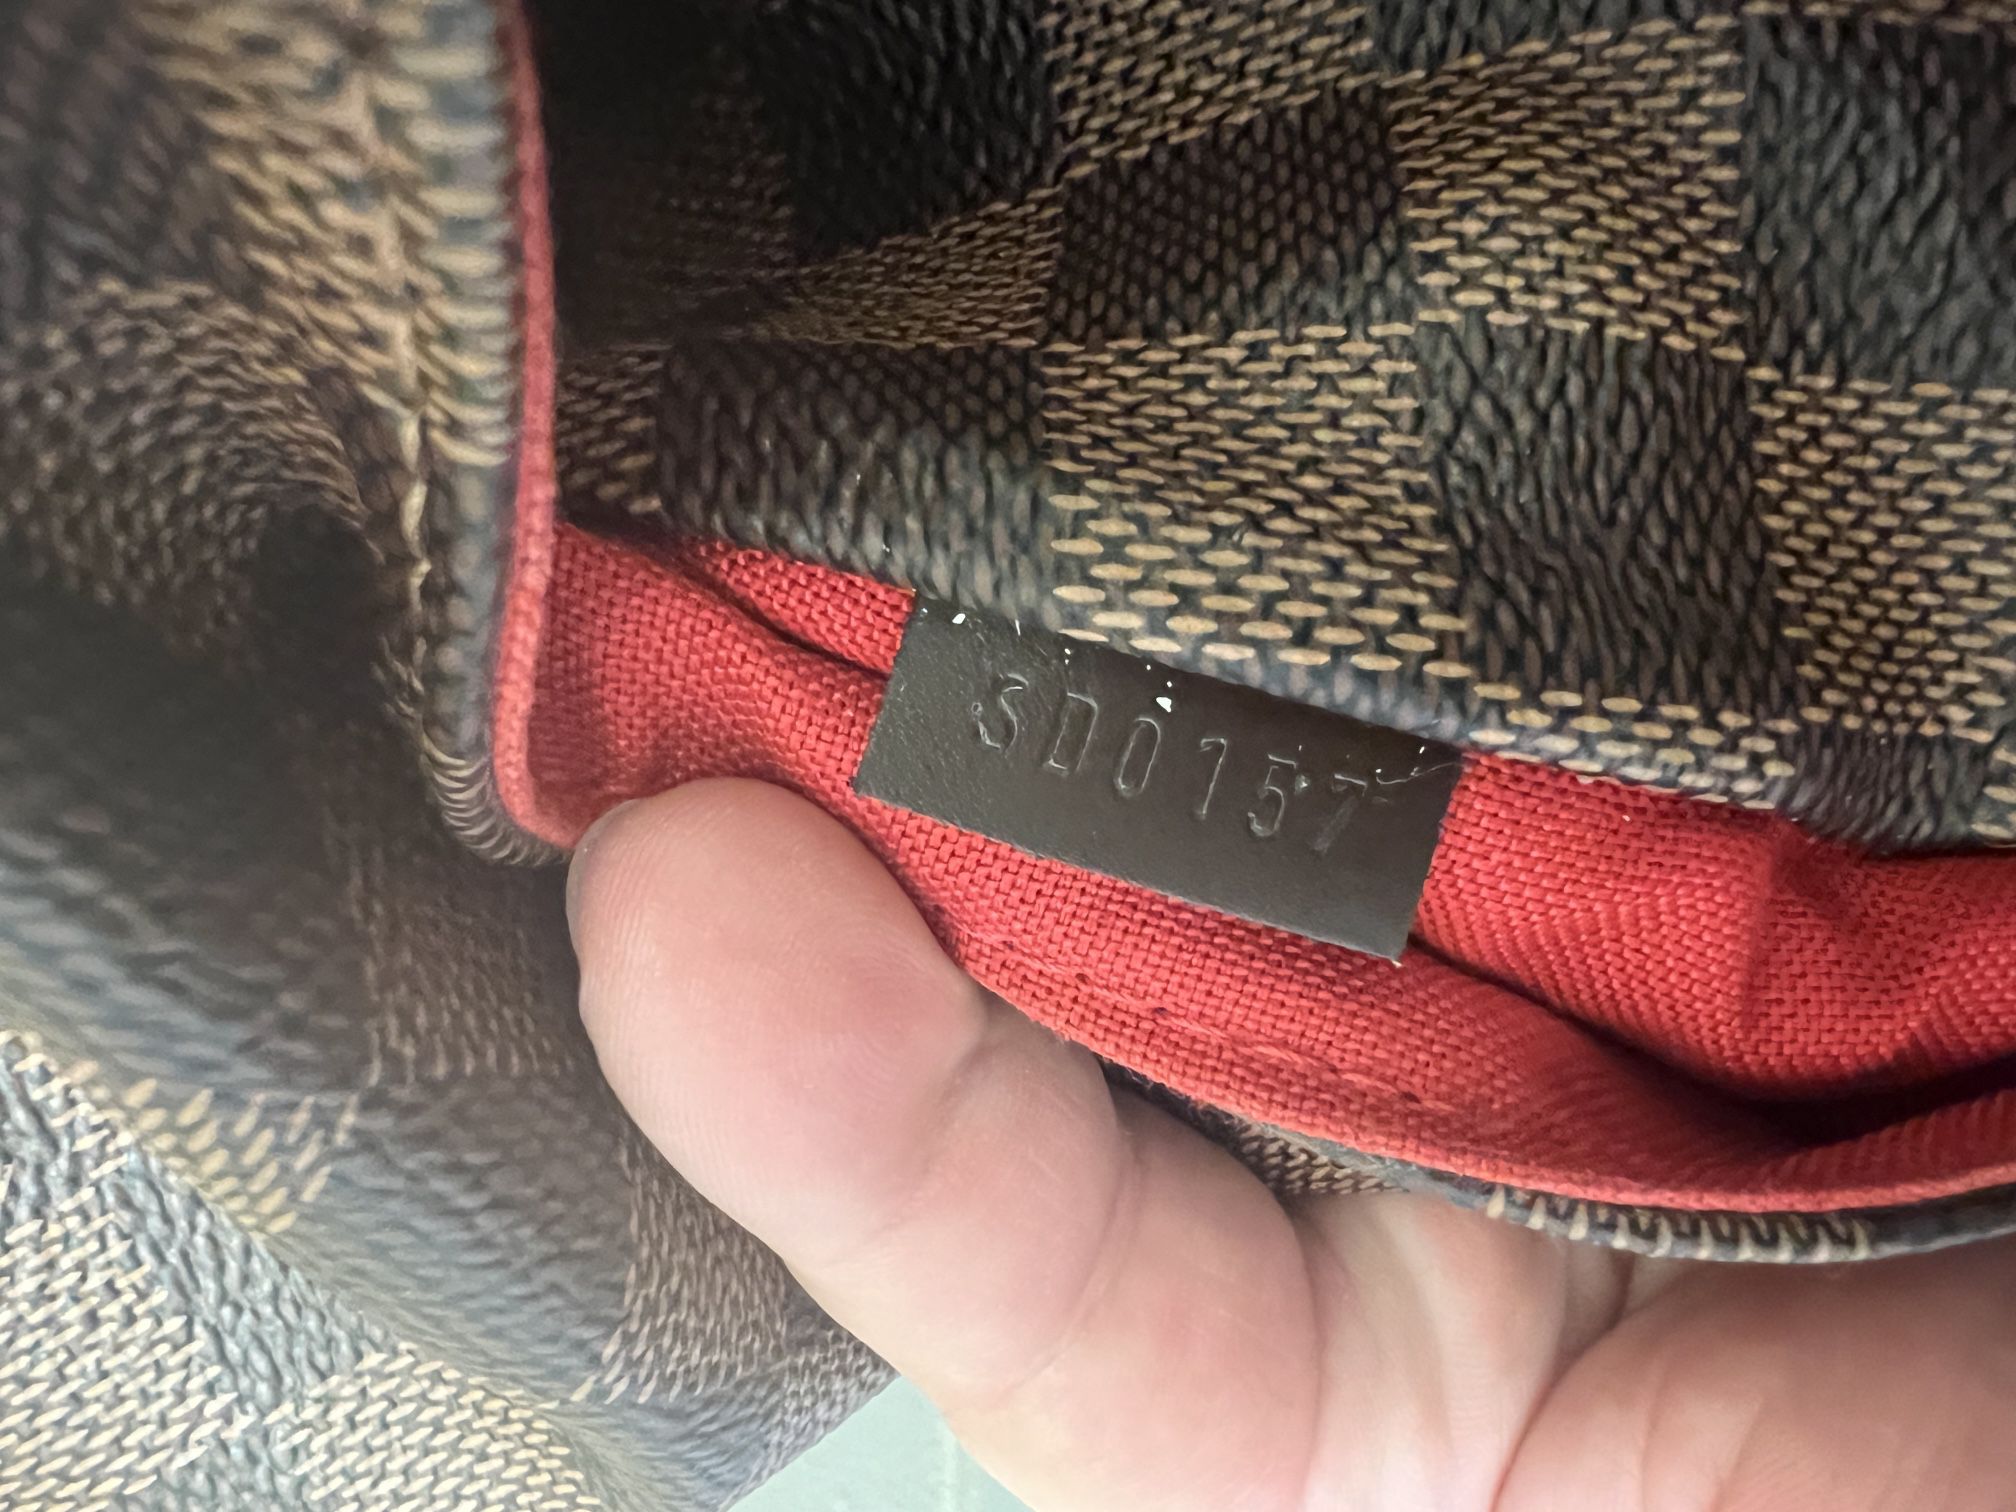 Louis Vuitton Totally MM Damier Ebene 100% Authentic Original Receipt &  Dust Bag for Sale in Phoenix, AZ - OfferUp